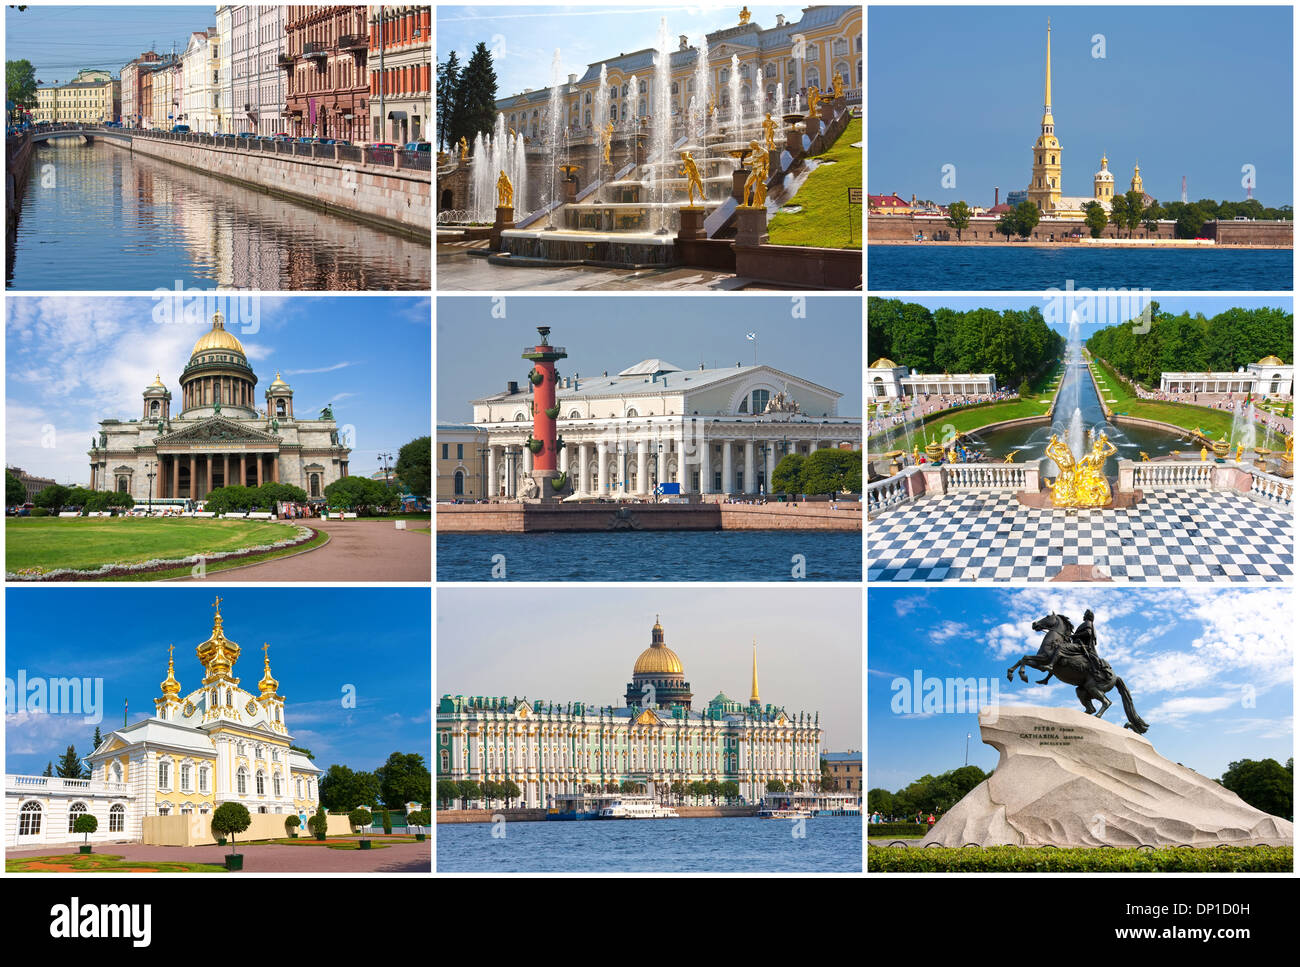 достопримечательности петербурга с названиями